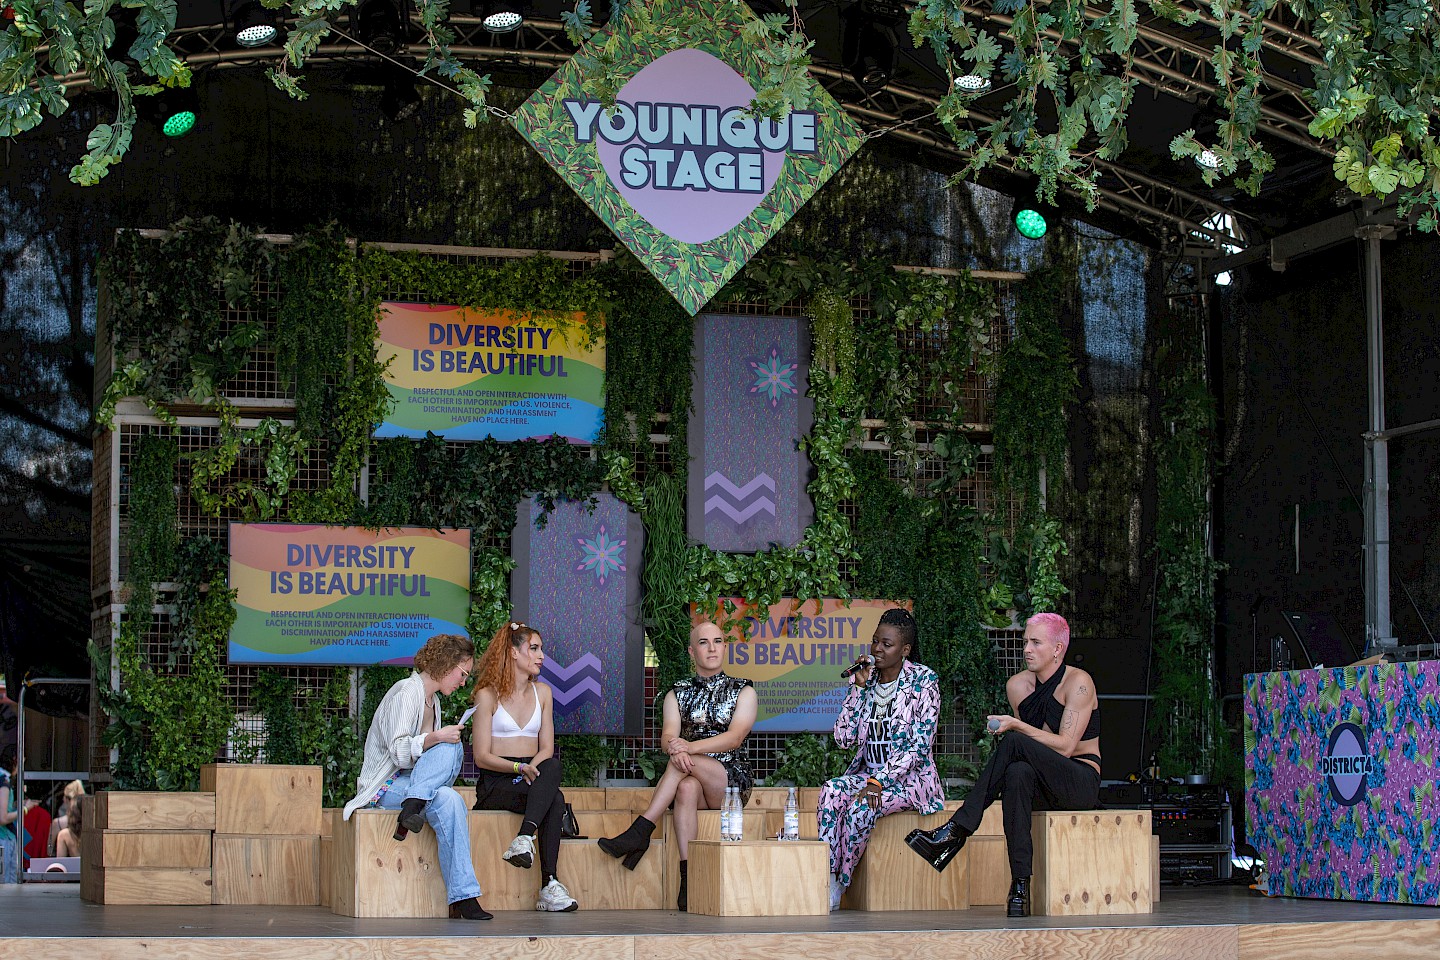 Vier Personen sitzen auf einer Bühne und unterhalten sich in einem Panel, hinter ihnen ist eine mit Grünpflanzen bewachsene Wand an der sich ein Bildschirm mit dem Text "Diversity is beautiful" befindet.